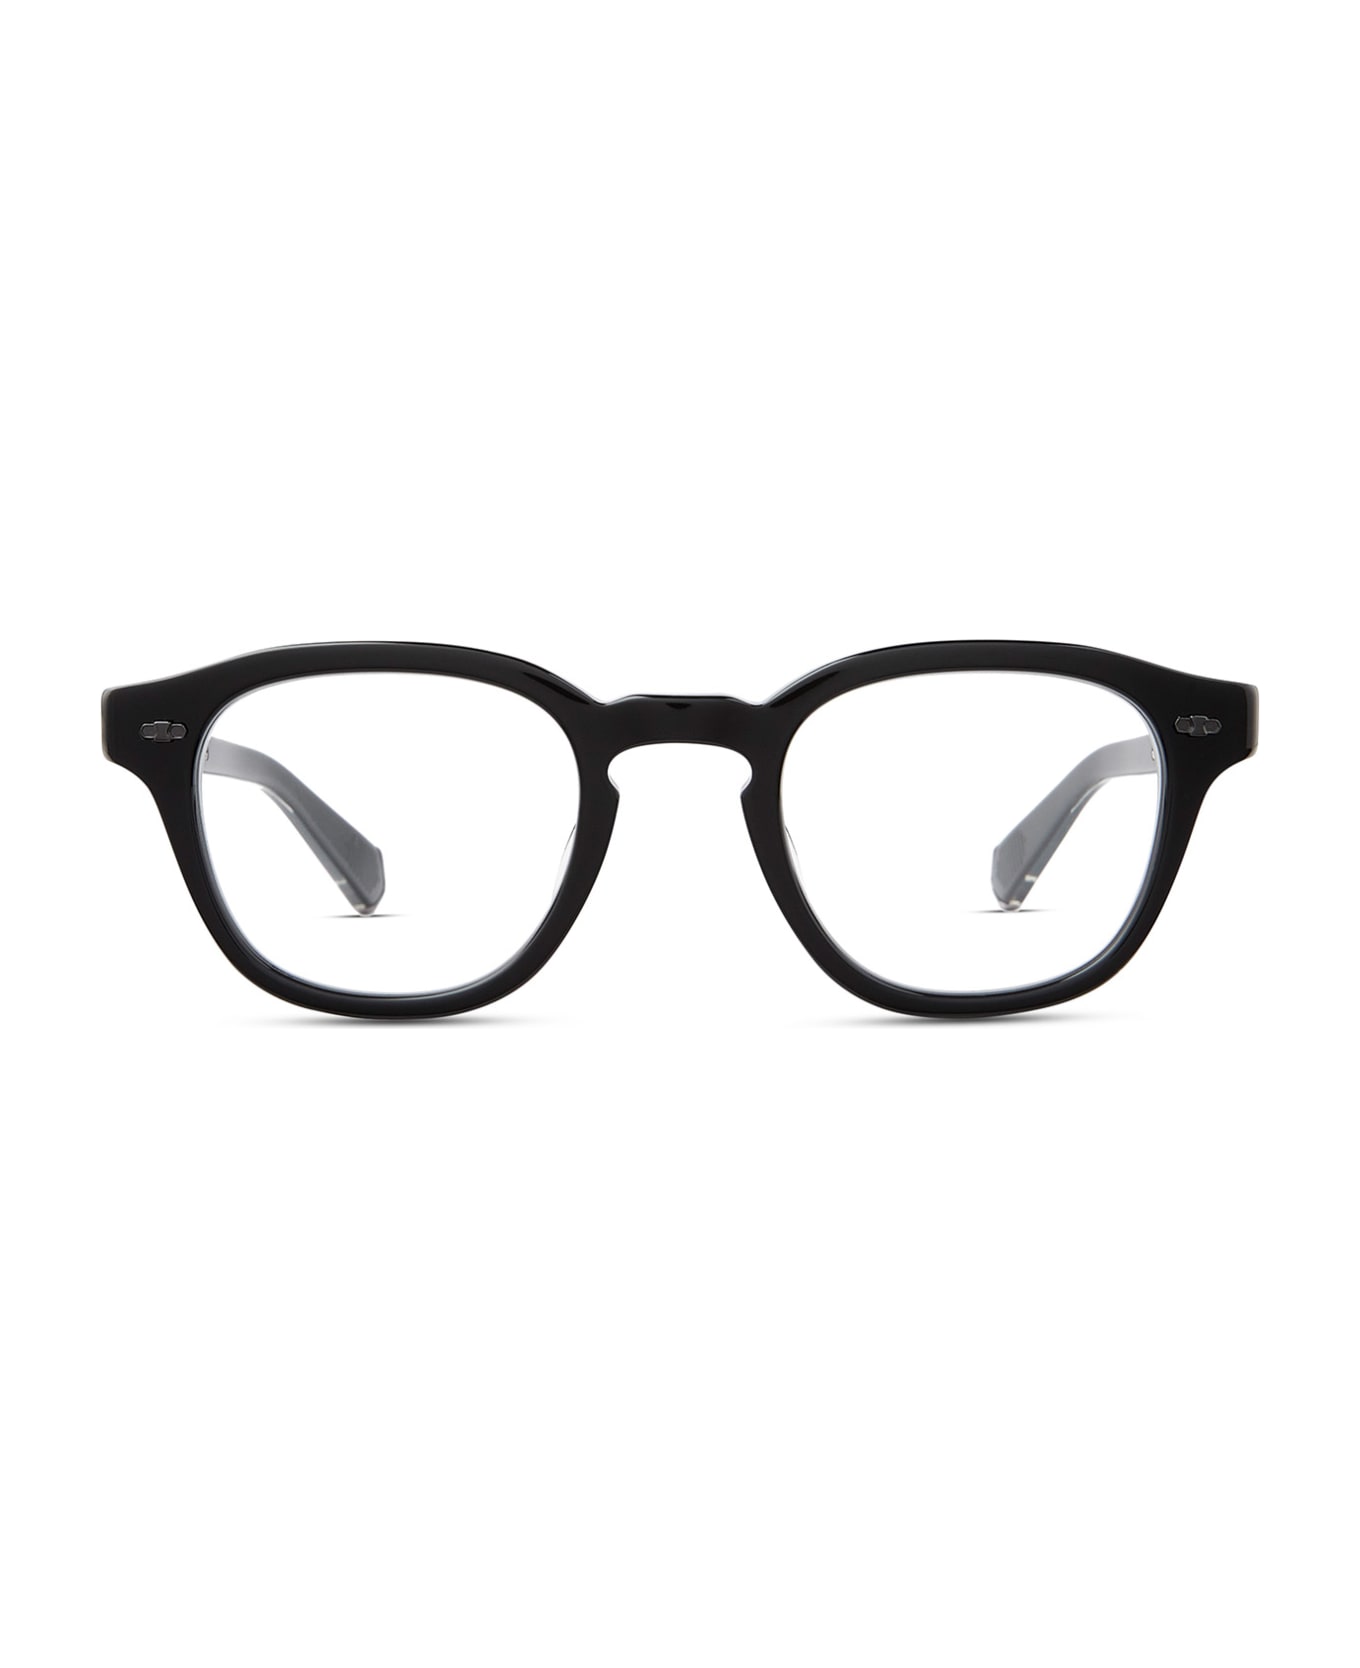 Mr. Leight James C Black-gunmetal Glasses - Black-Gunmetal アイウェア